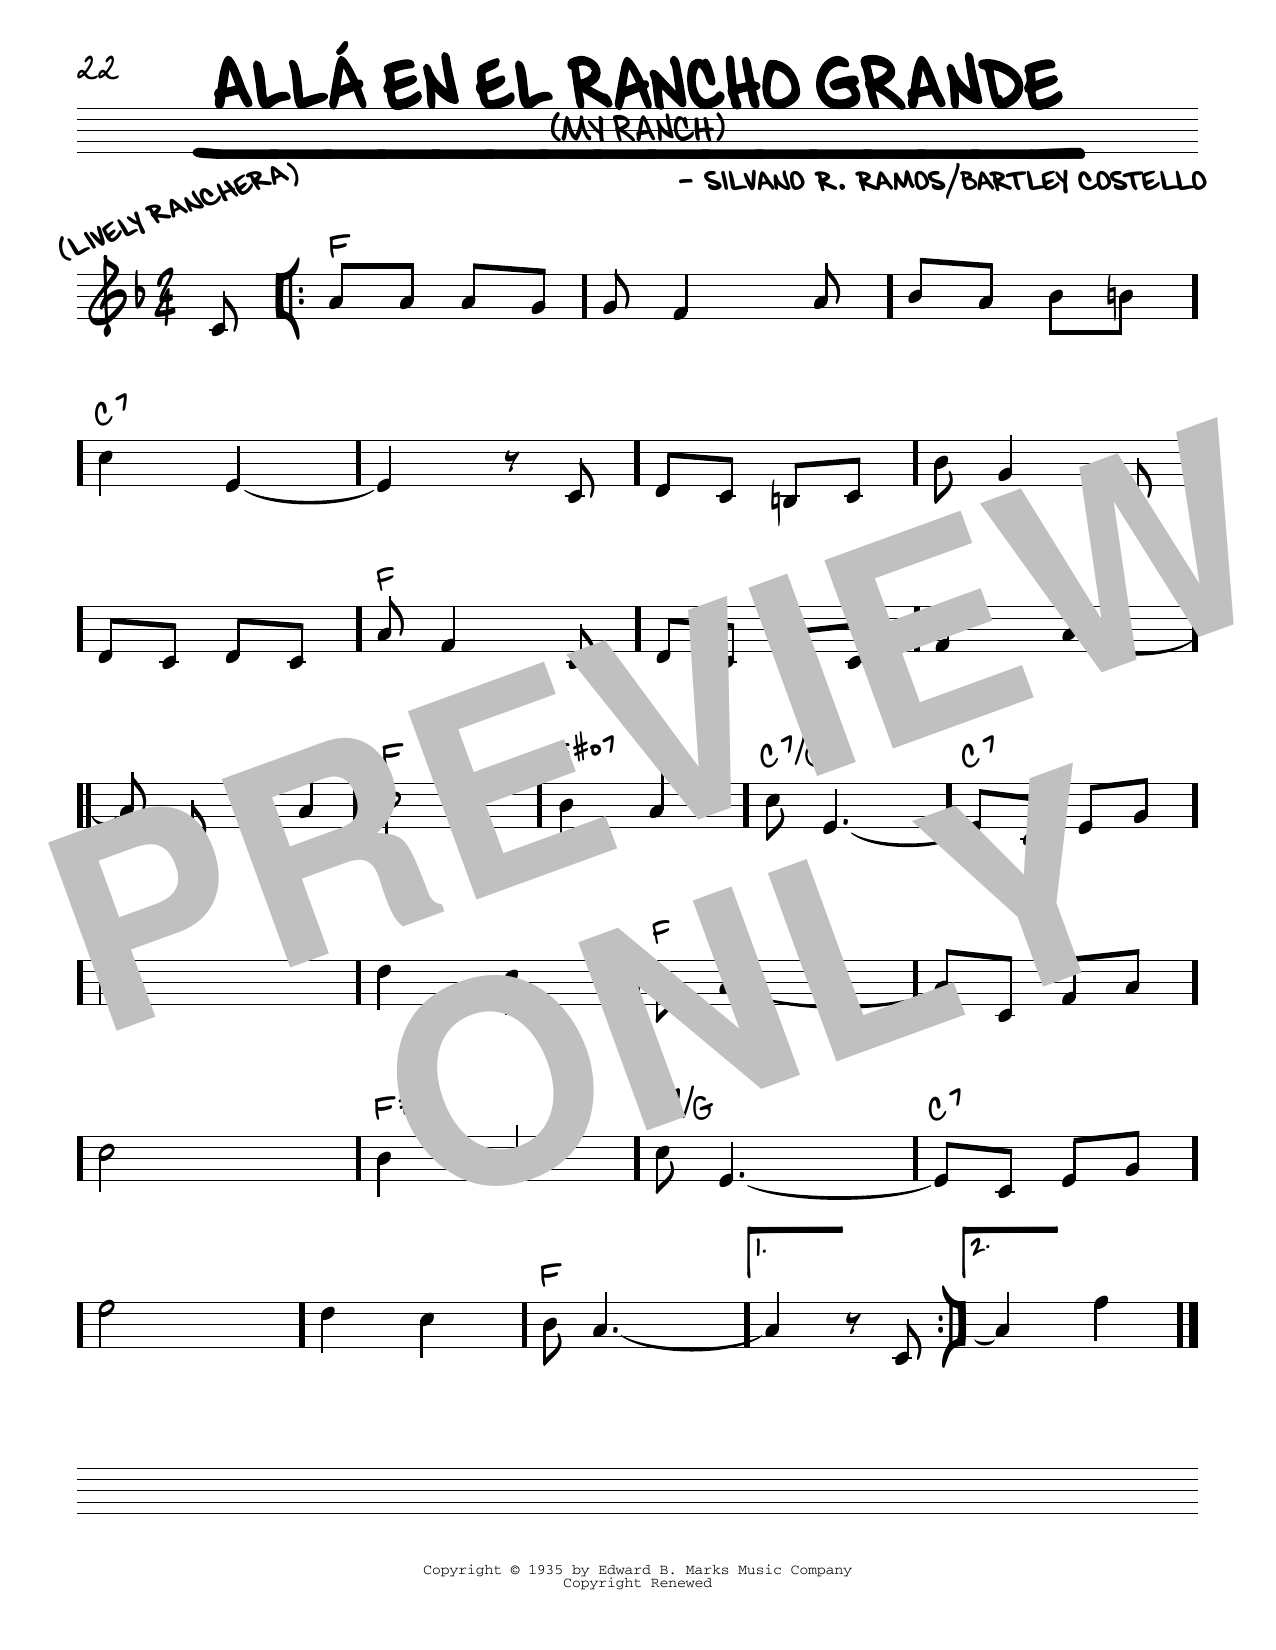 Silvano R. Ramos Alla En El Rancho Grande (My Ranch) Sheet Music Notes & Chords for Real Book – Melody & Chords - Download or Print PDF